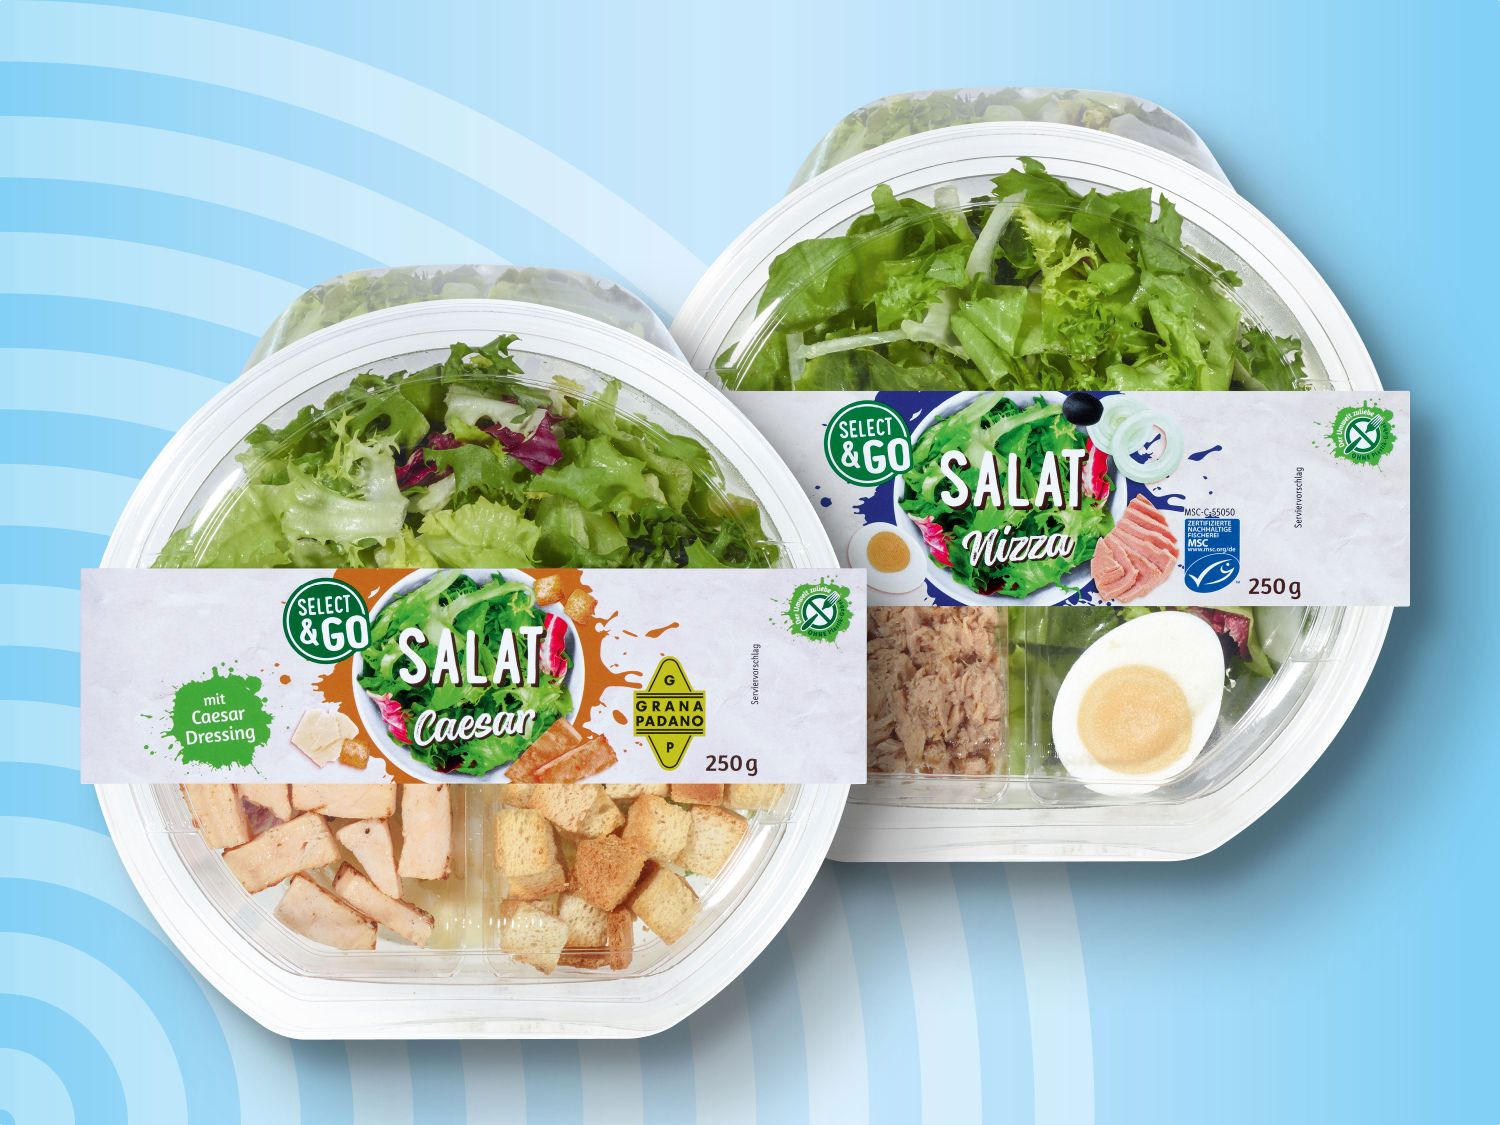 Salate Deutschland - Go Italienische & Lidl Select